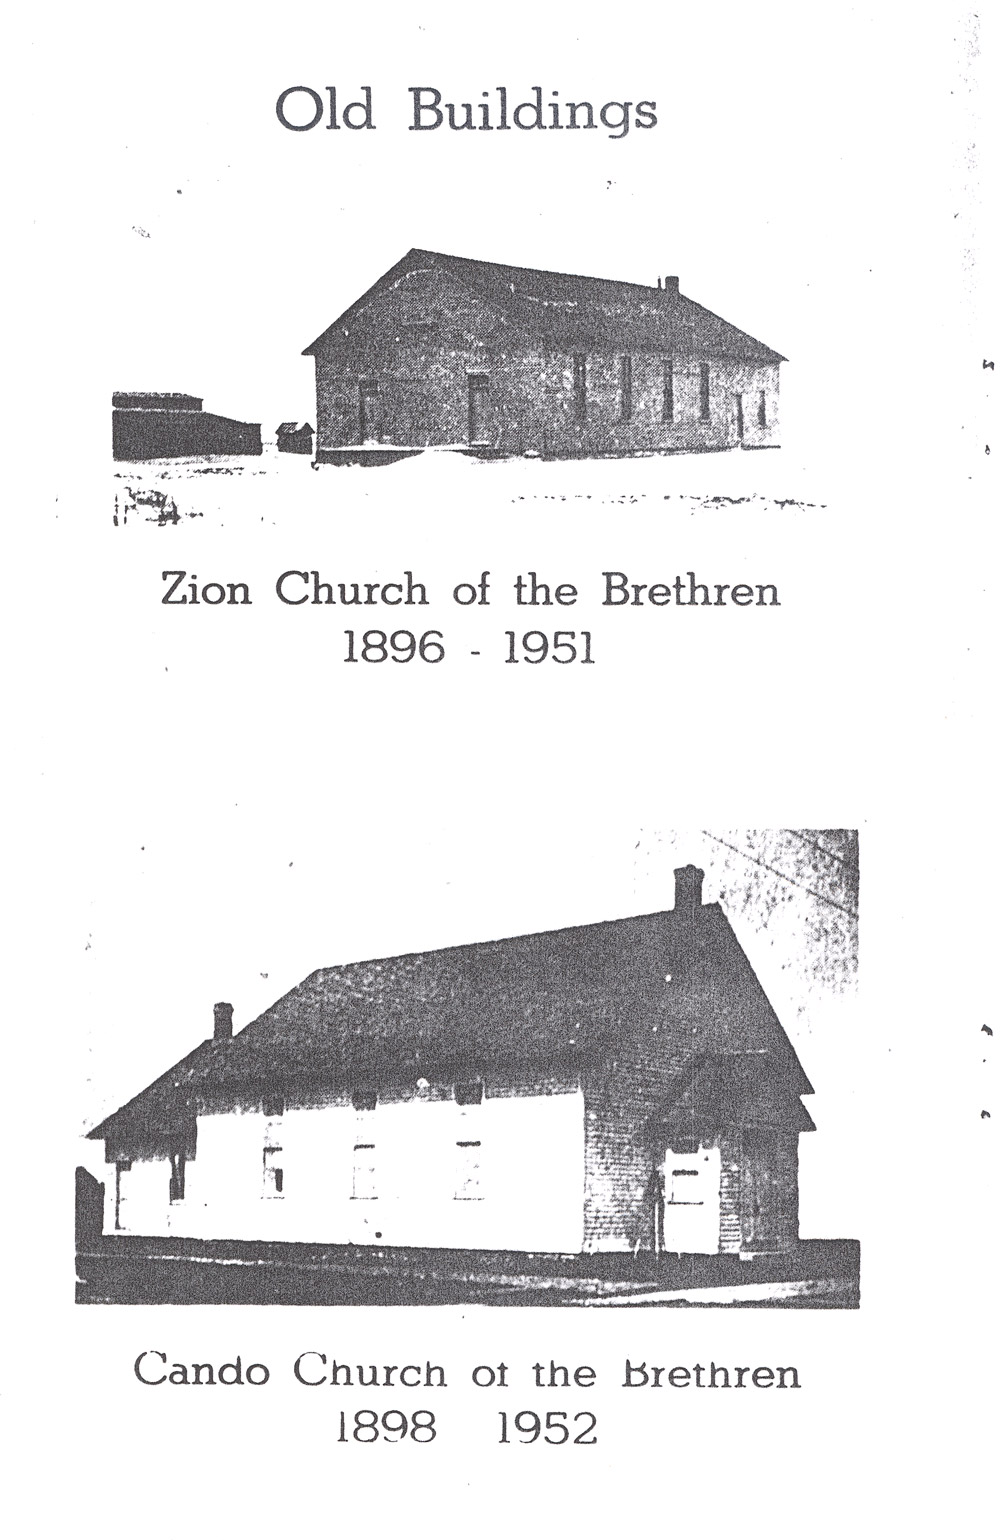 Brethren Churches